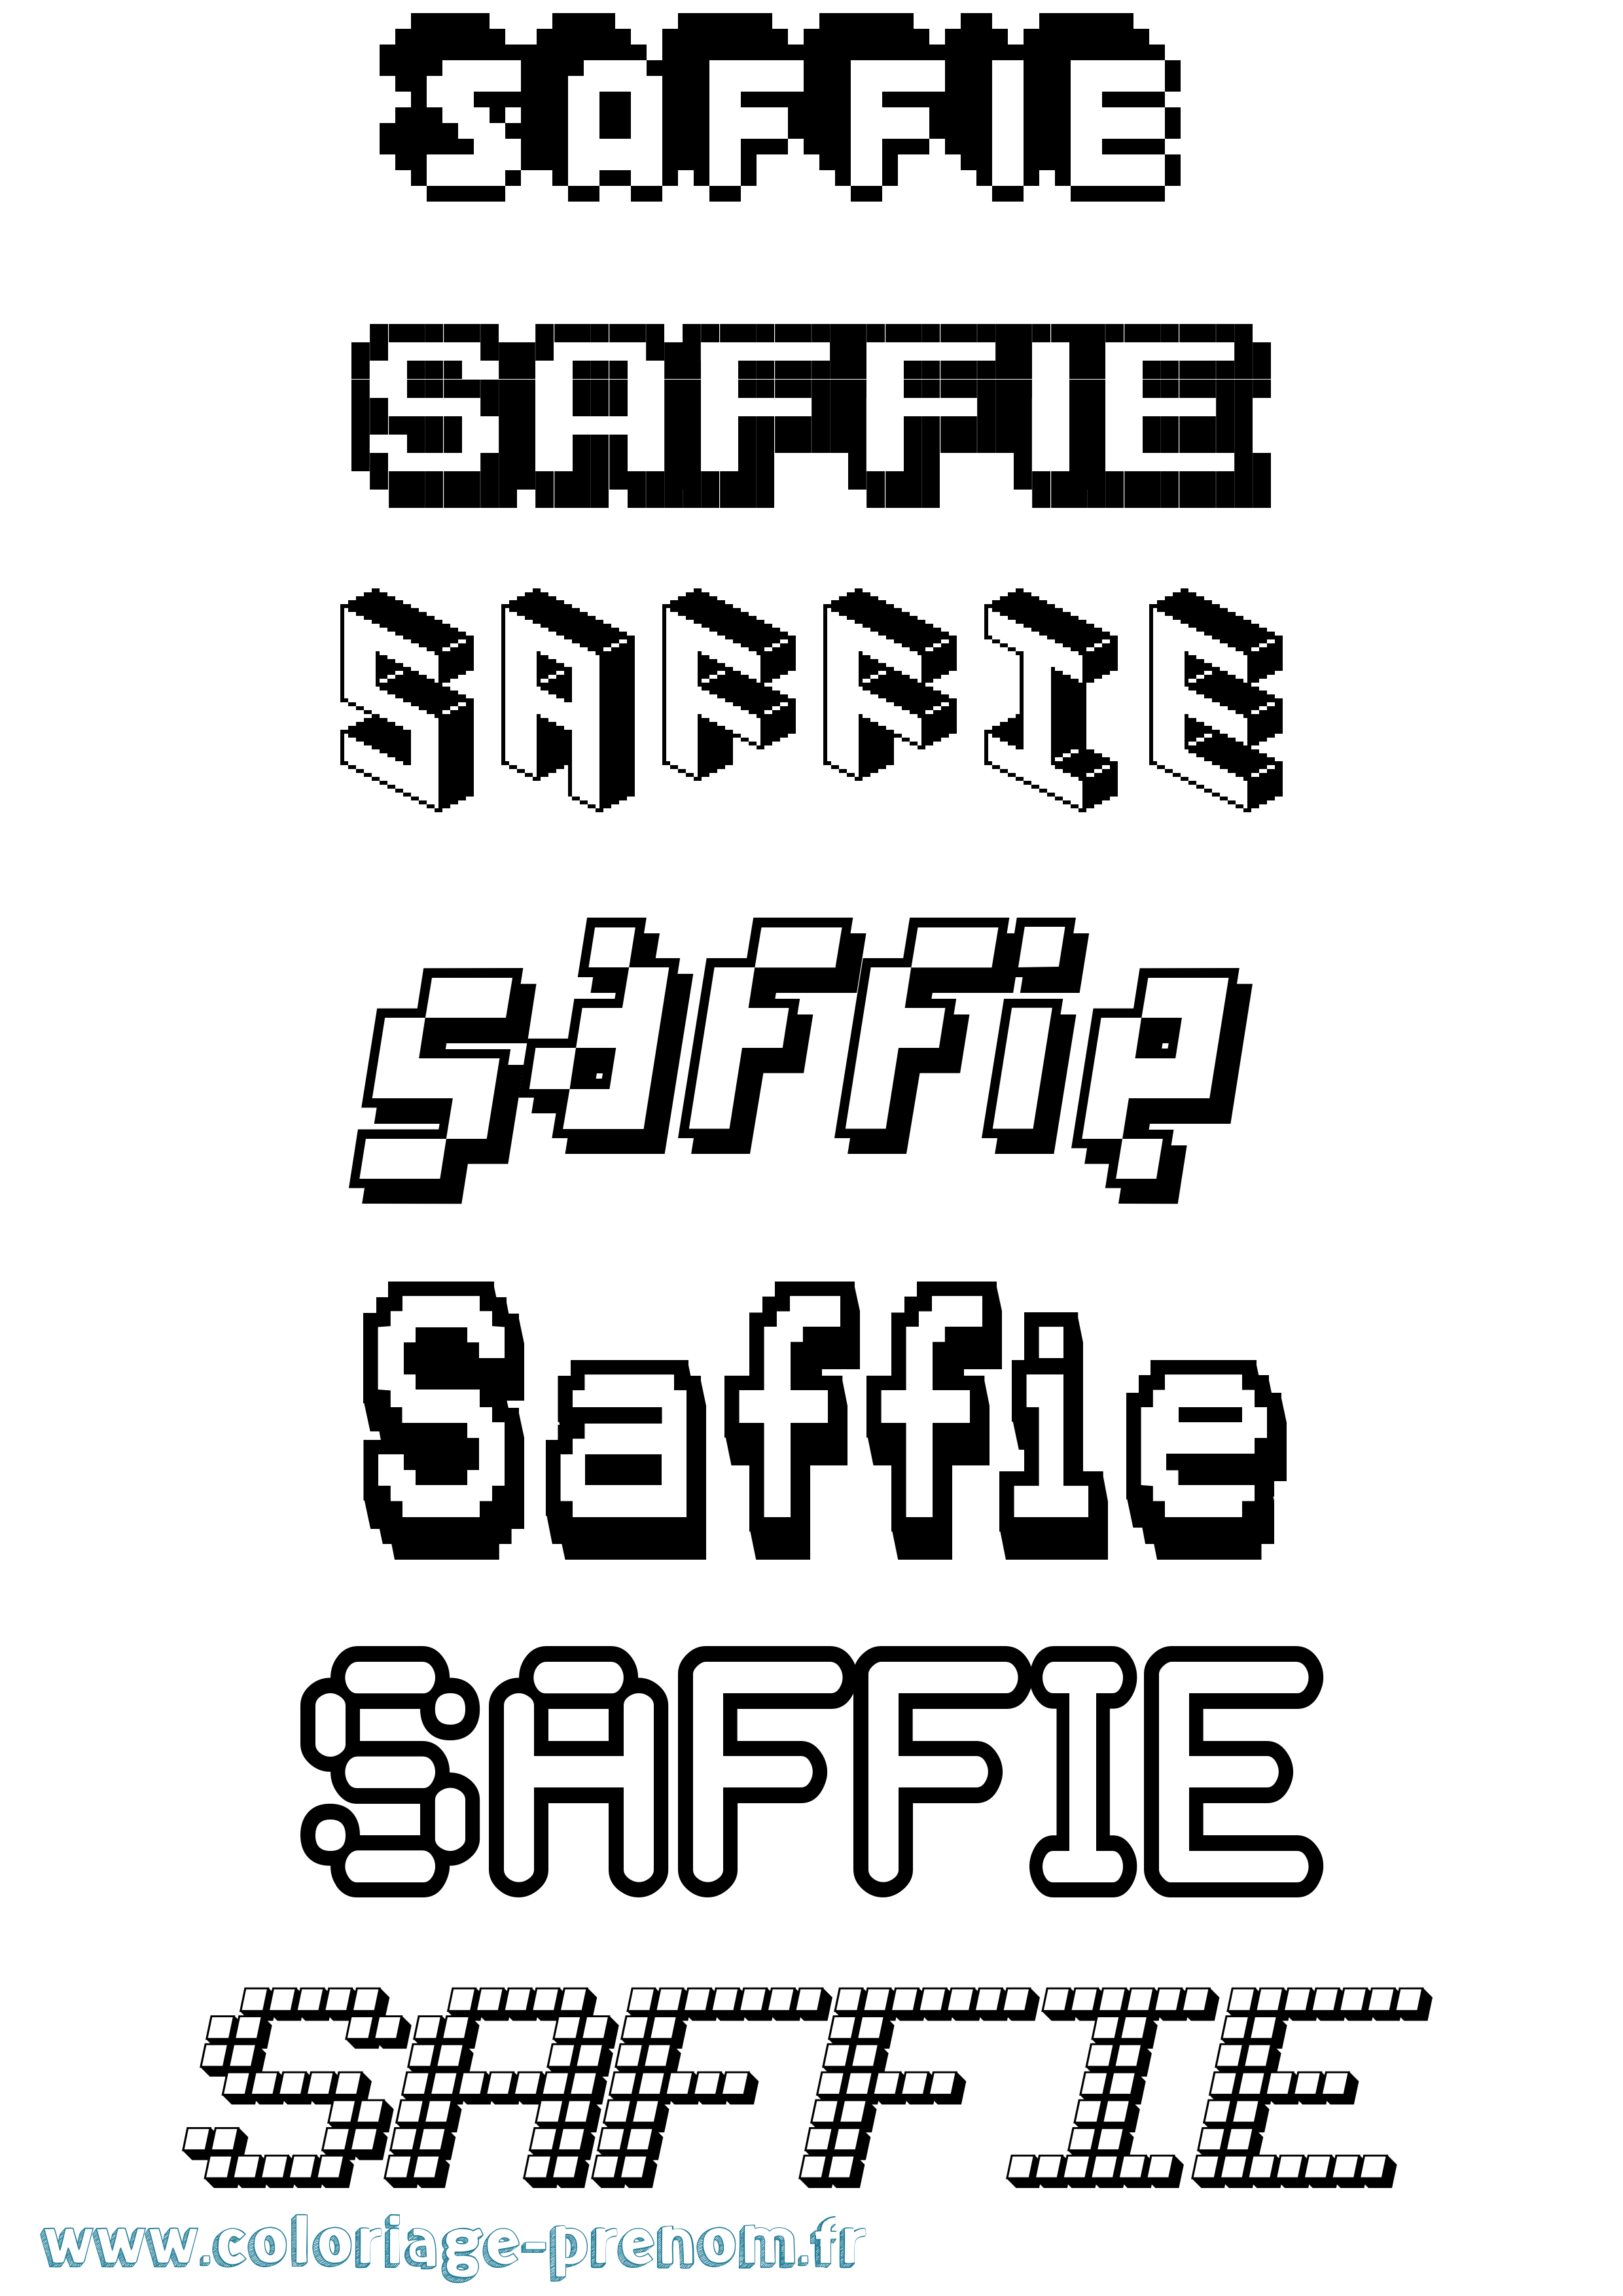 Coloriage prénom Saffie Pixel